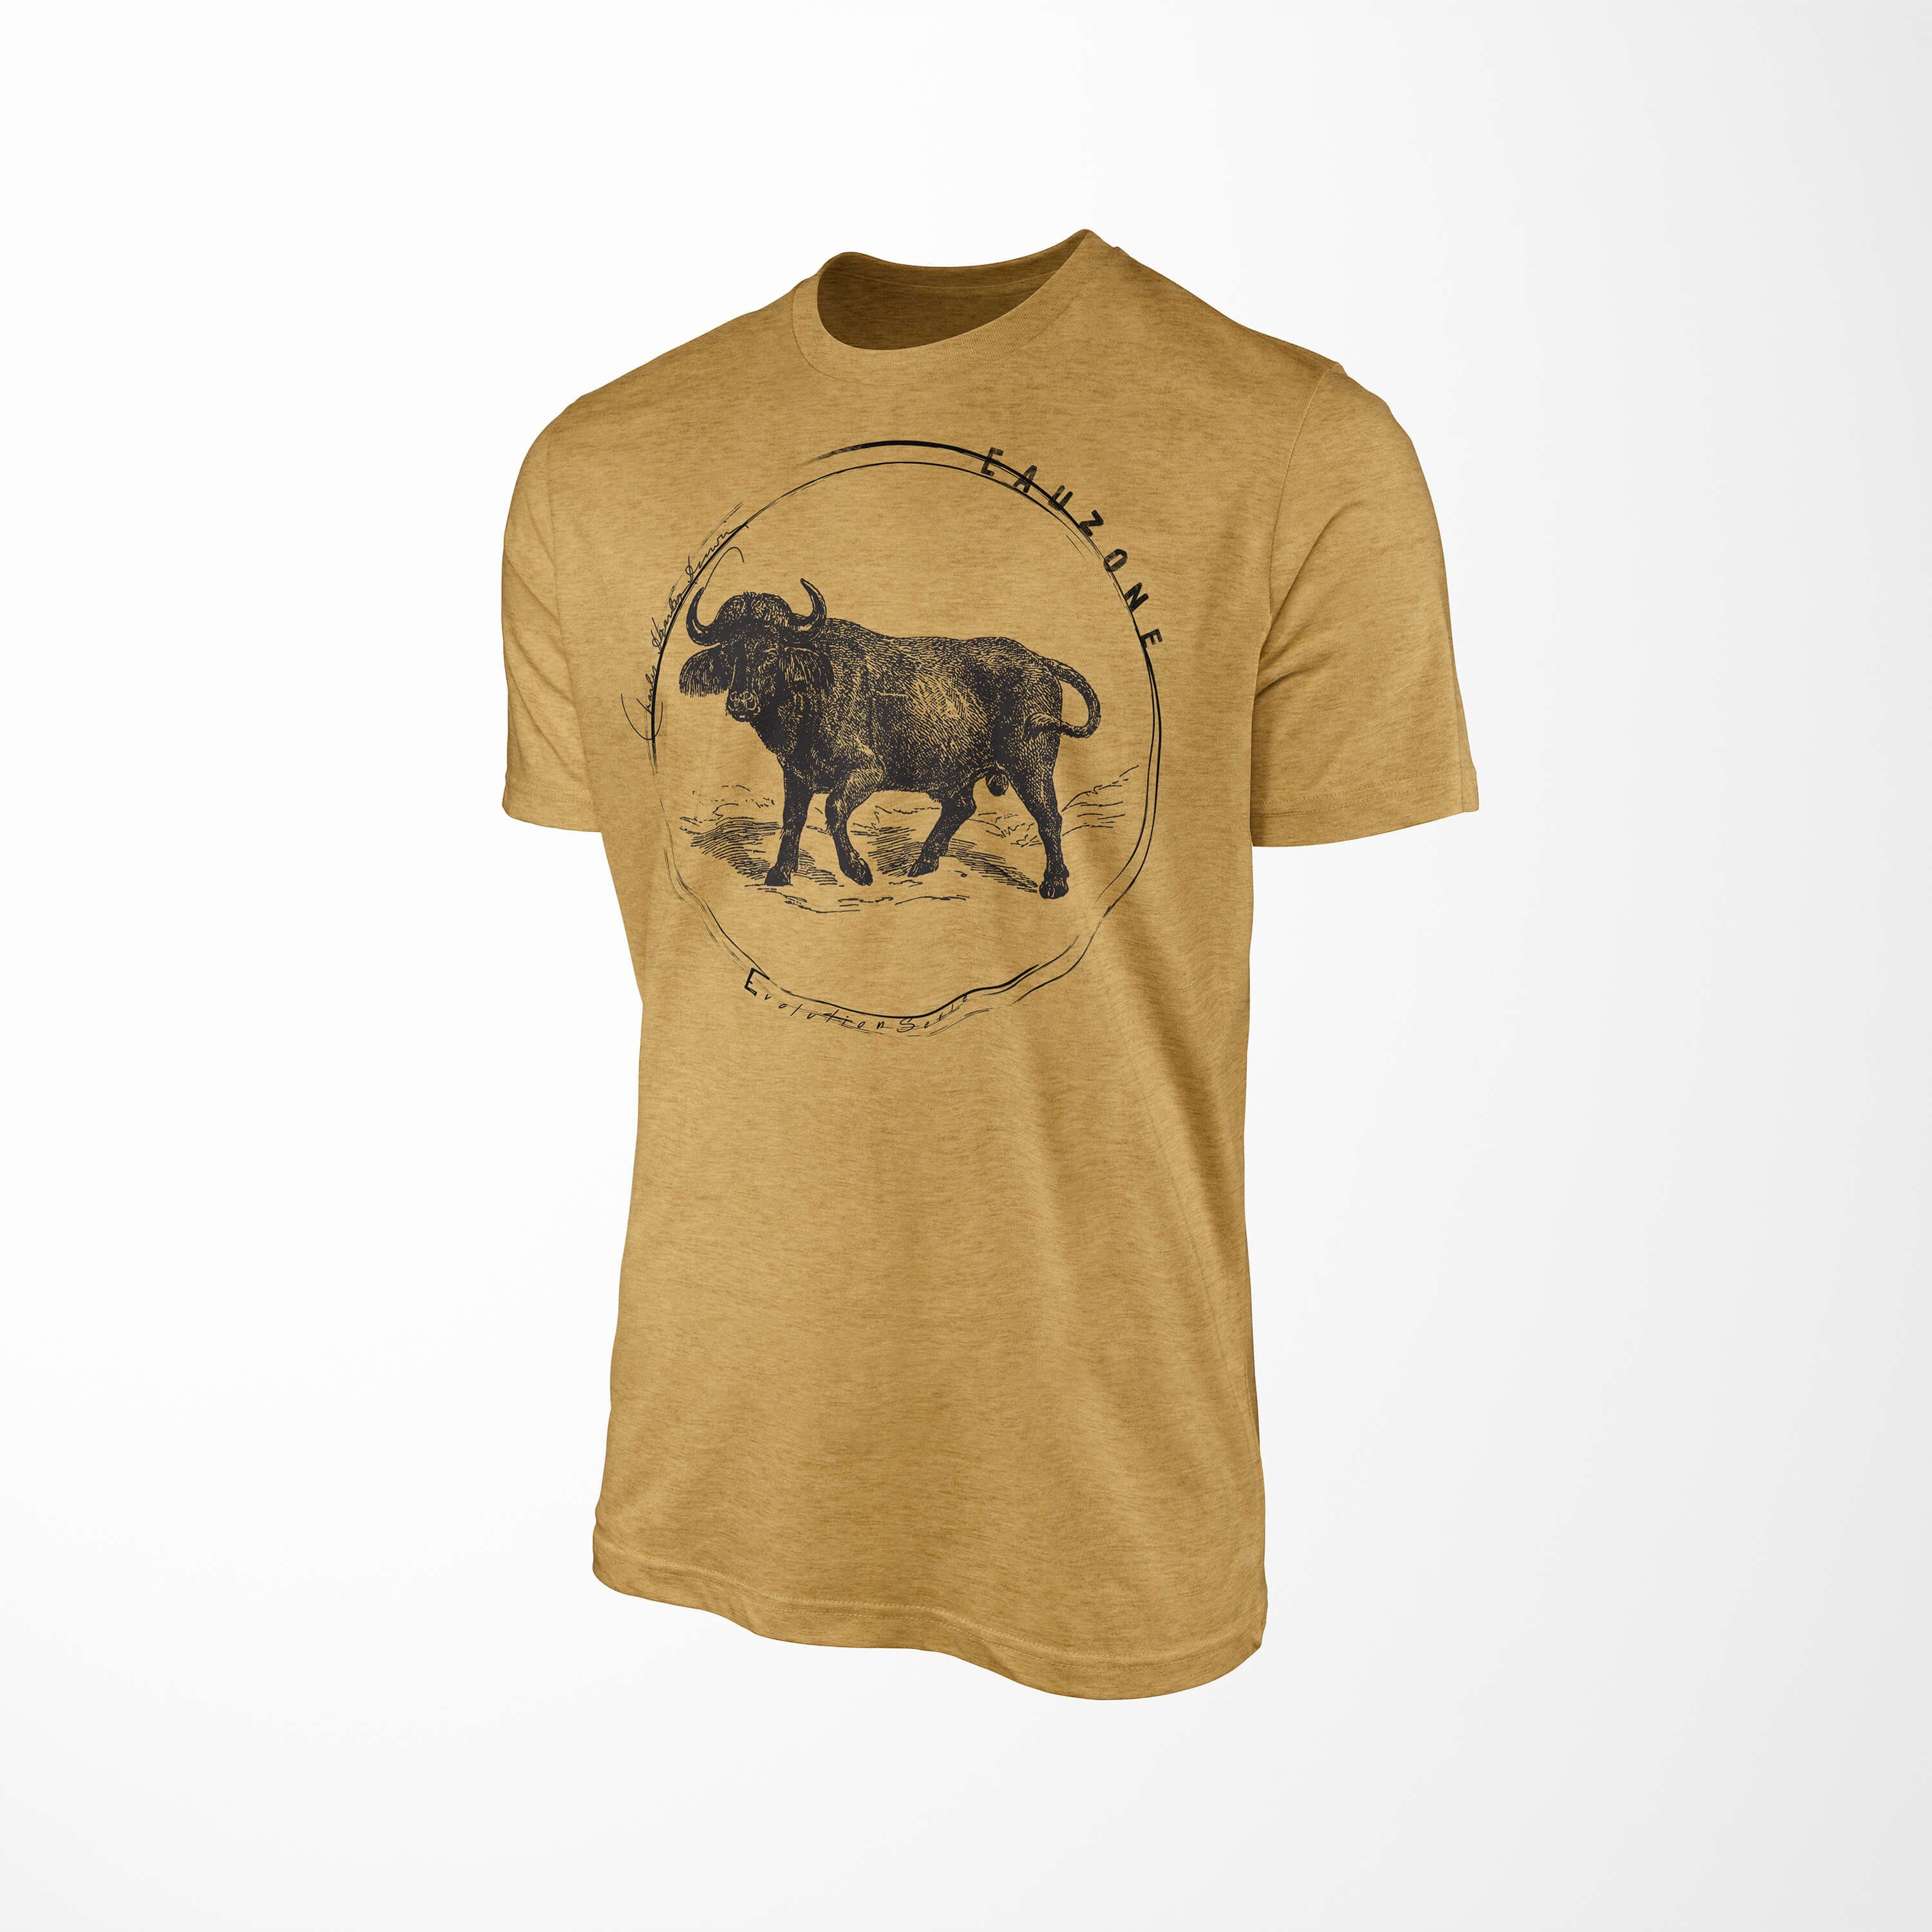 Sinus Art T-Shirt Evolution Herren Gold Büffel T-Shirt Antique